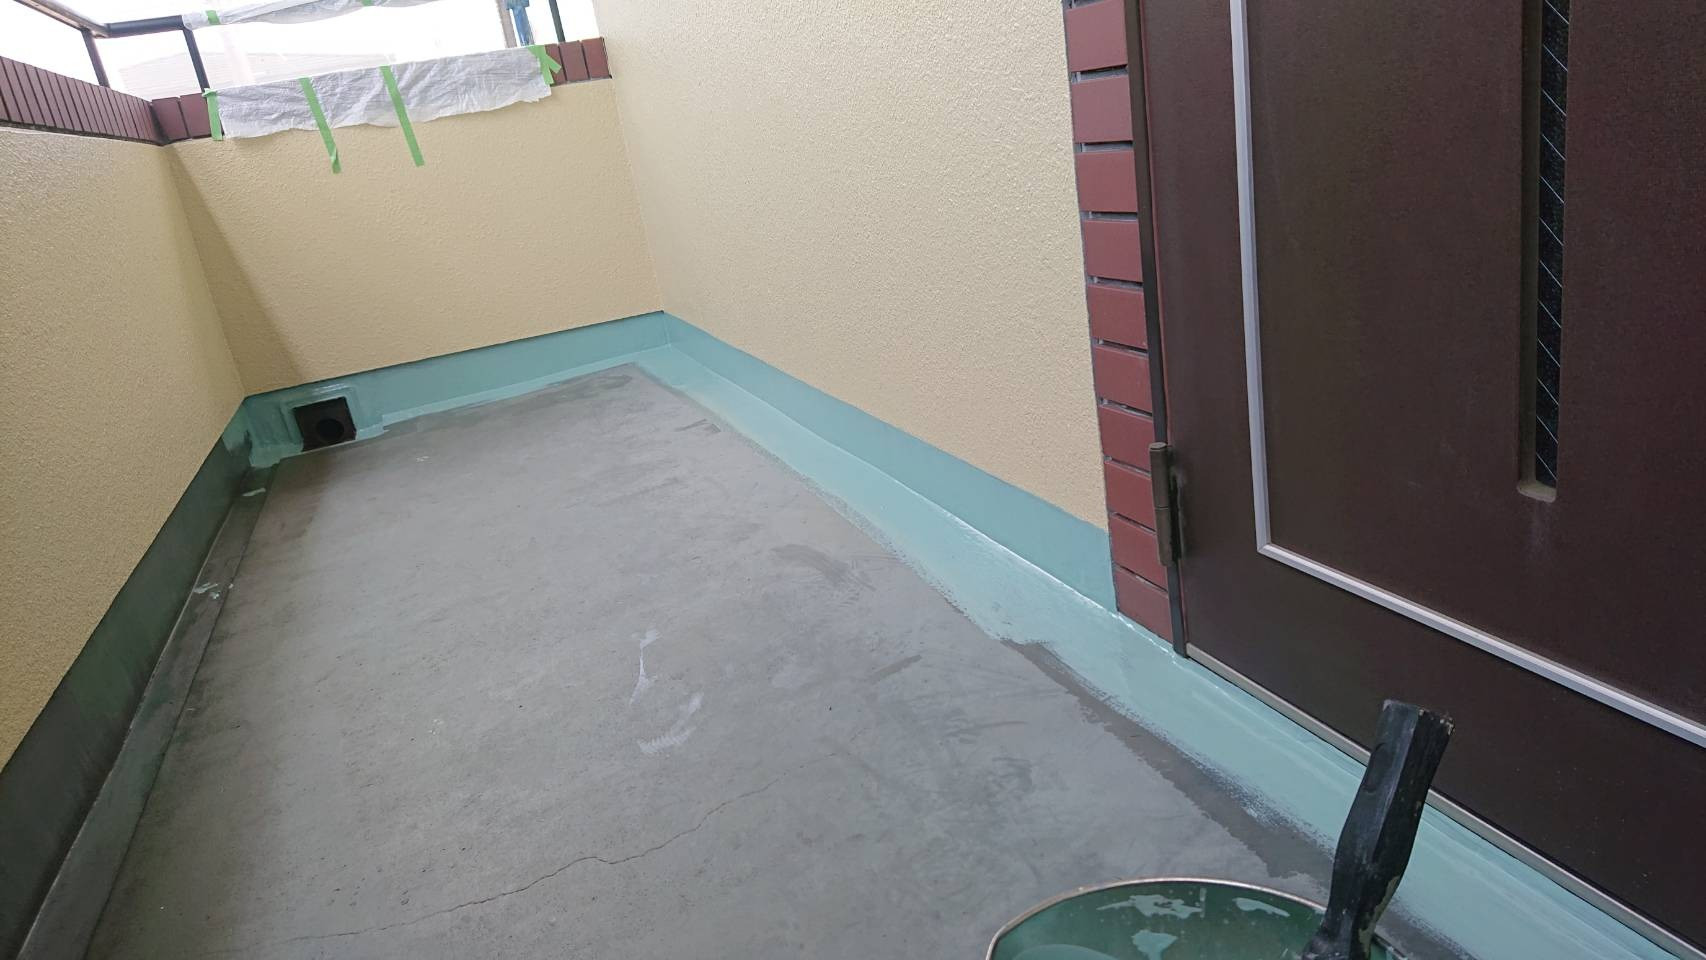 相模原市のM様邸集合住宅で外壁塗装・屋上防水工事の共用部床側溝ウレタン防水1層目です。